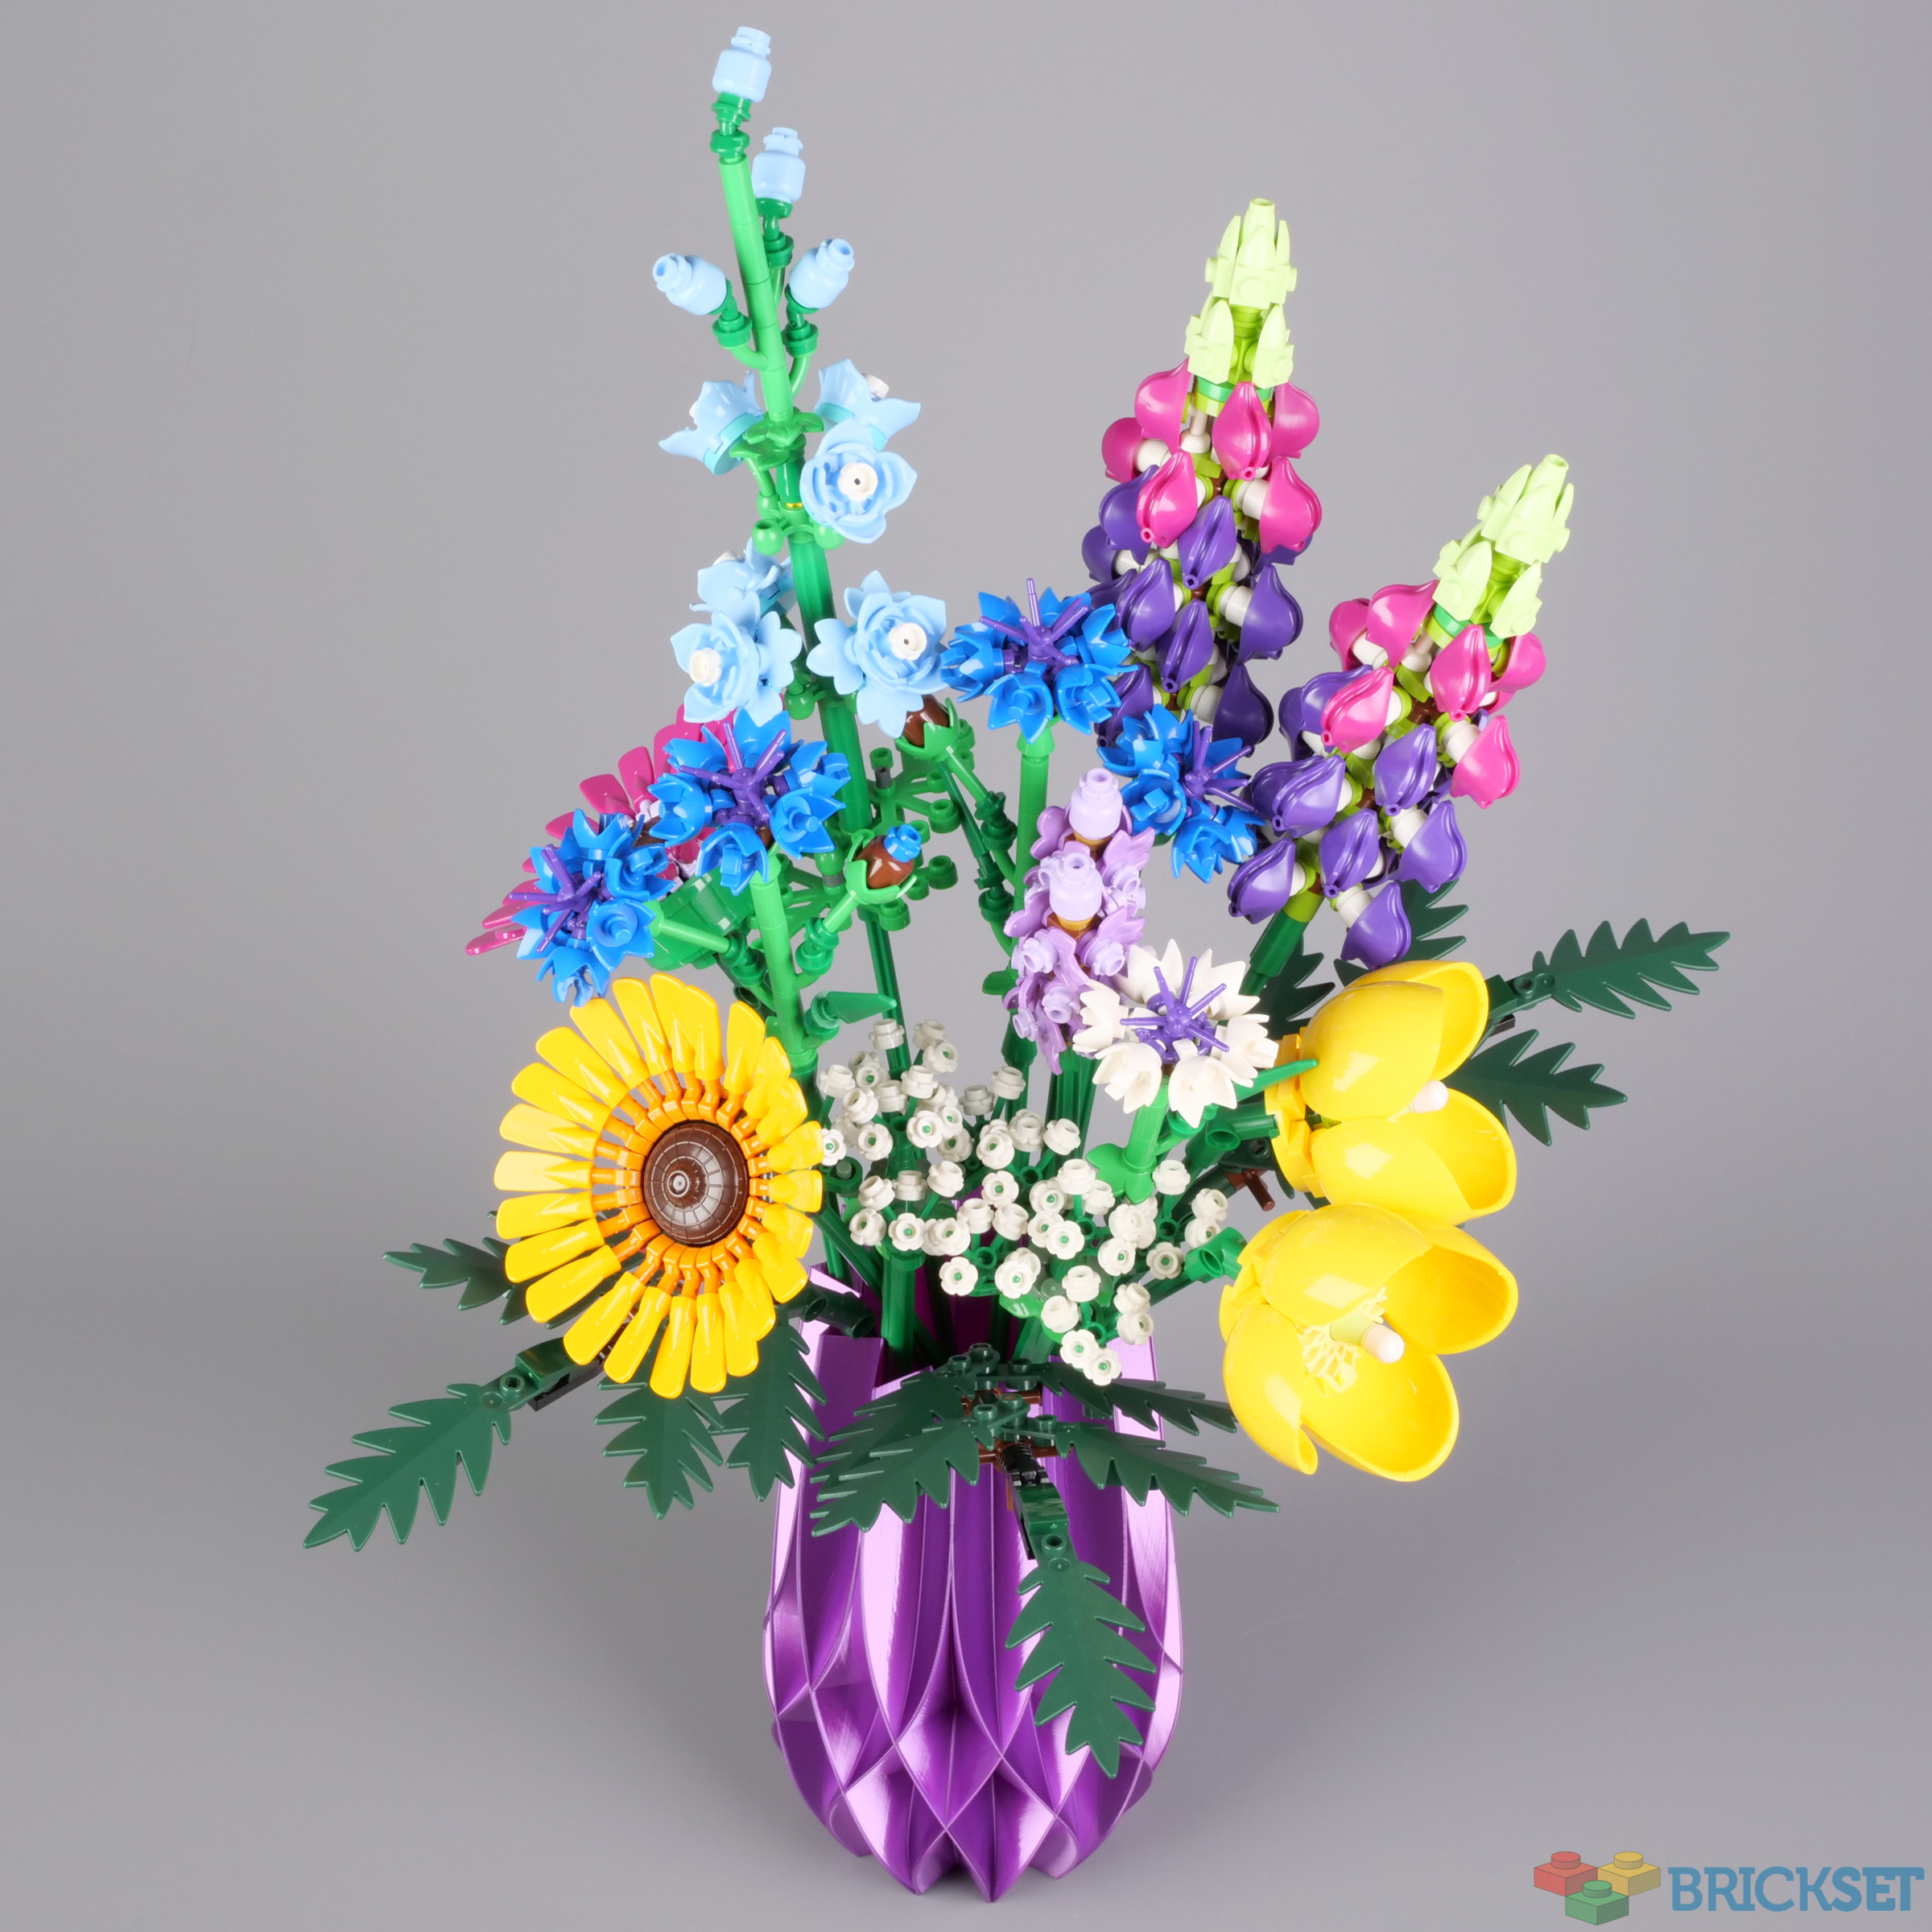 LEGO IDEAS - Big Classic LEGO Flowers